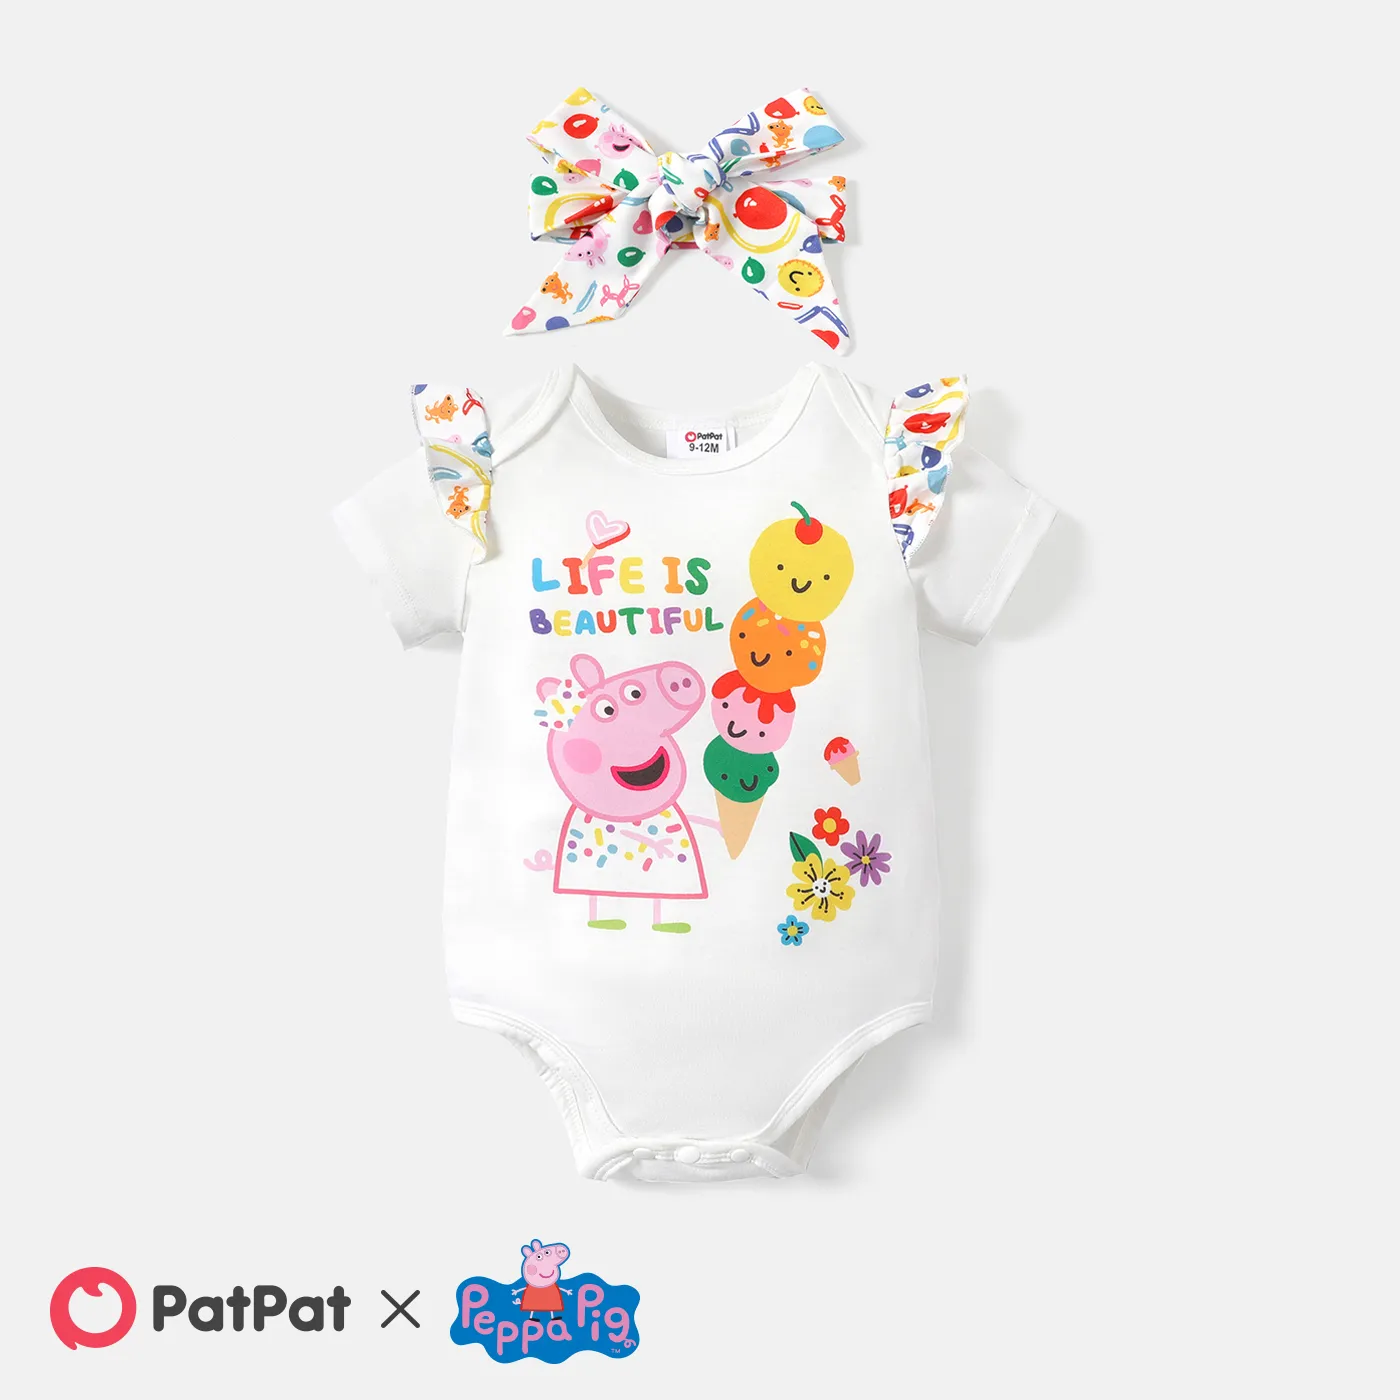 

Peppa Pig Baby Boy/Girl Short-sleeve Graphic Print Tee or Romper